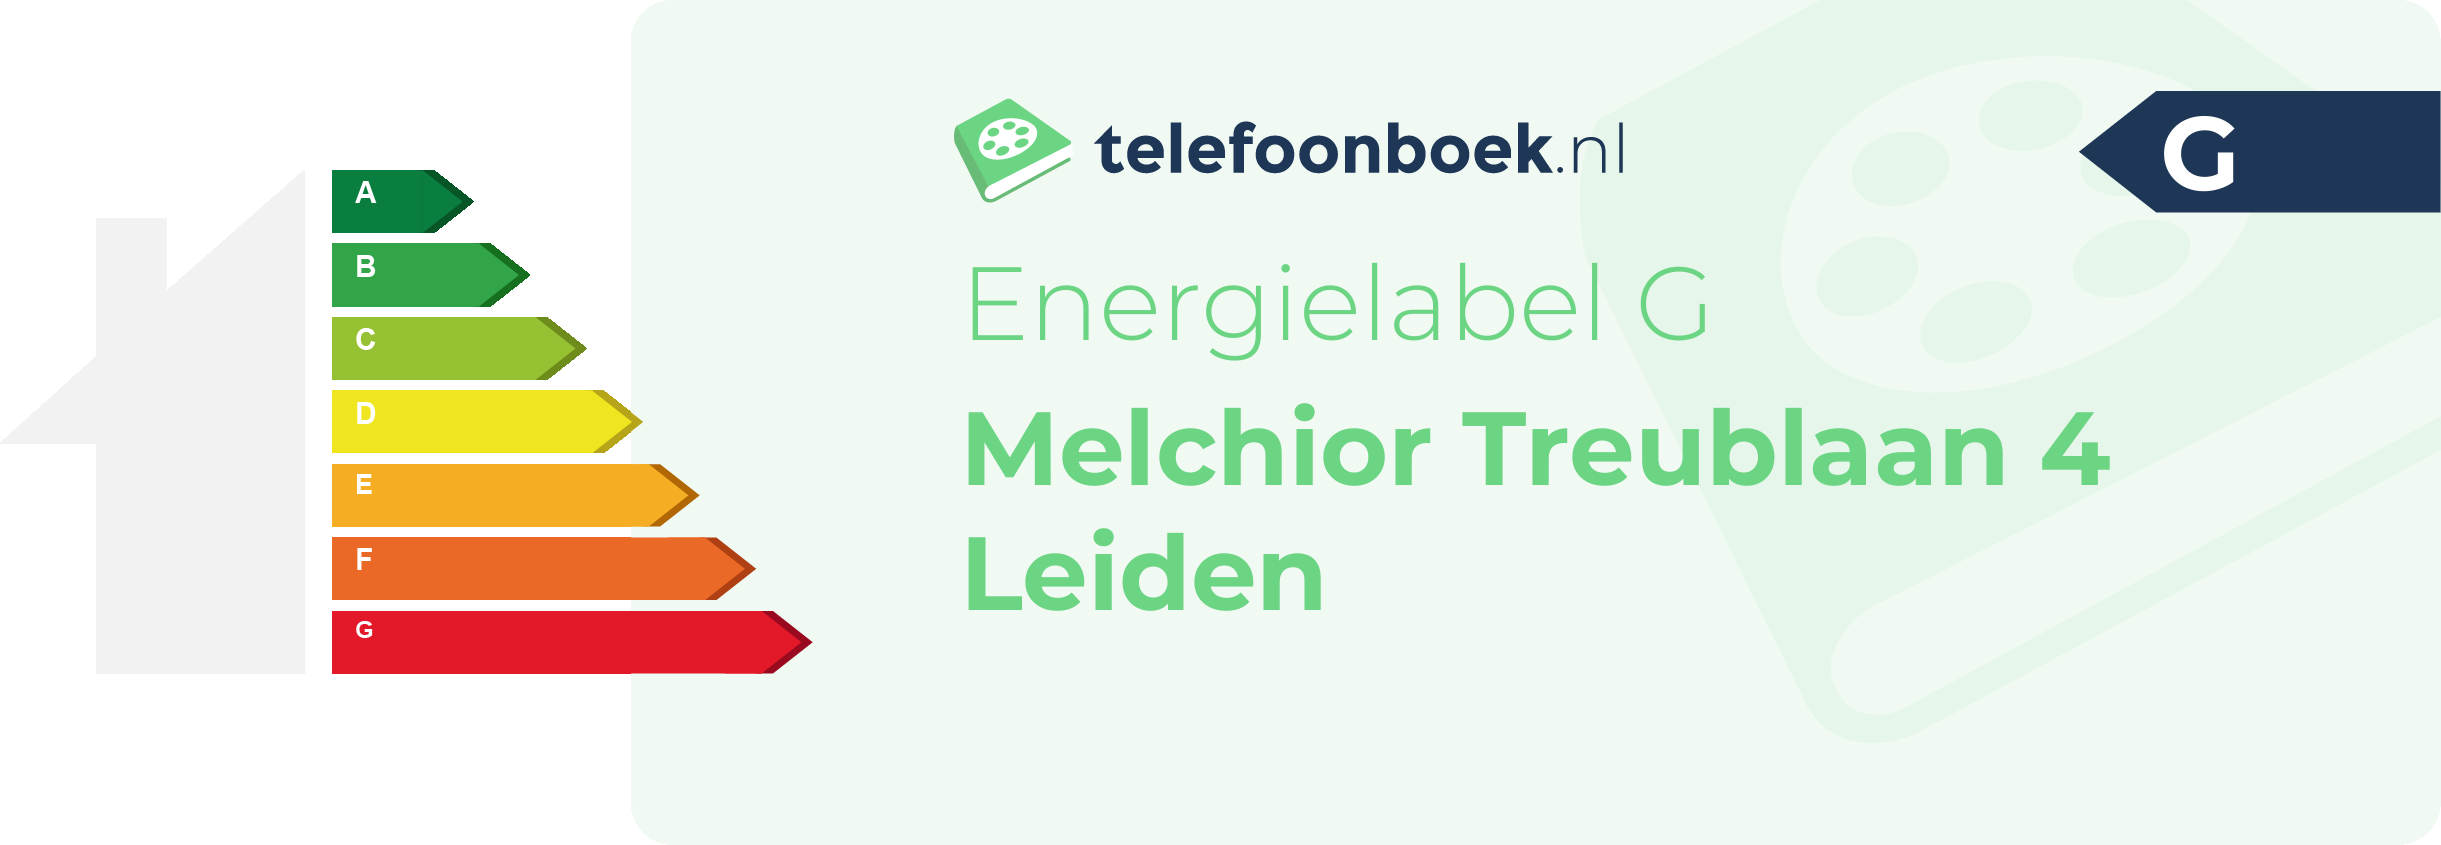 Energielabel Melchior Treublaan 4 Leiden